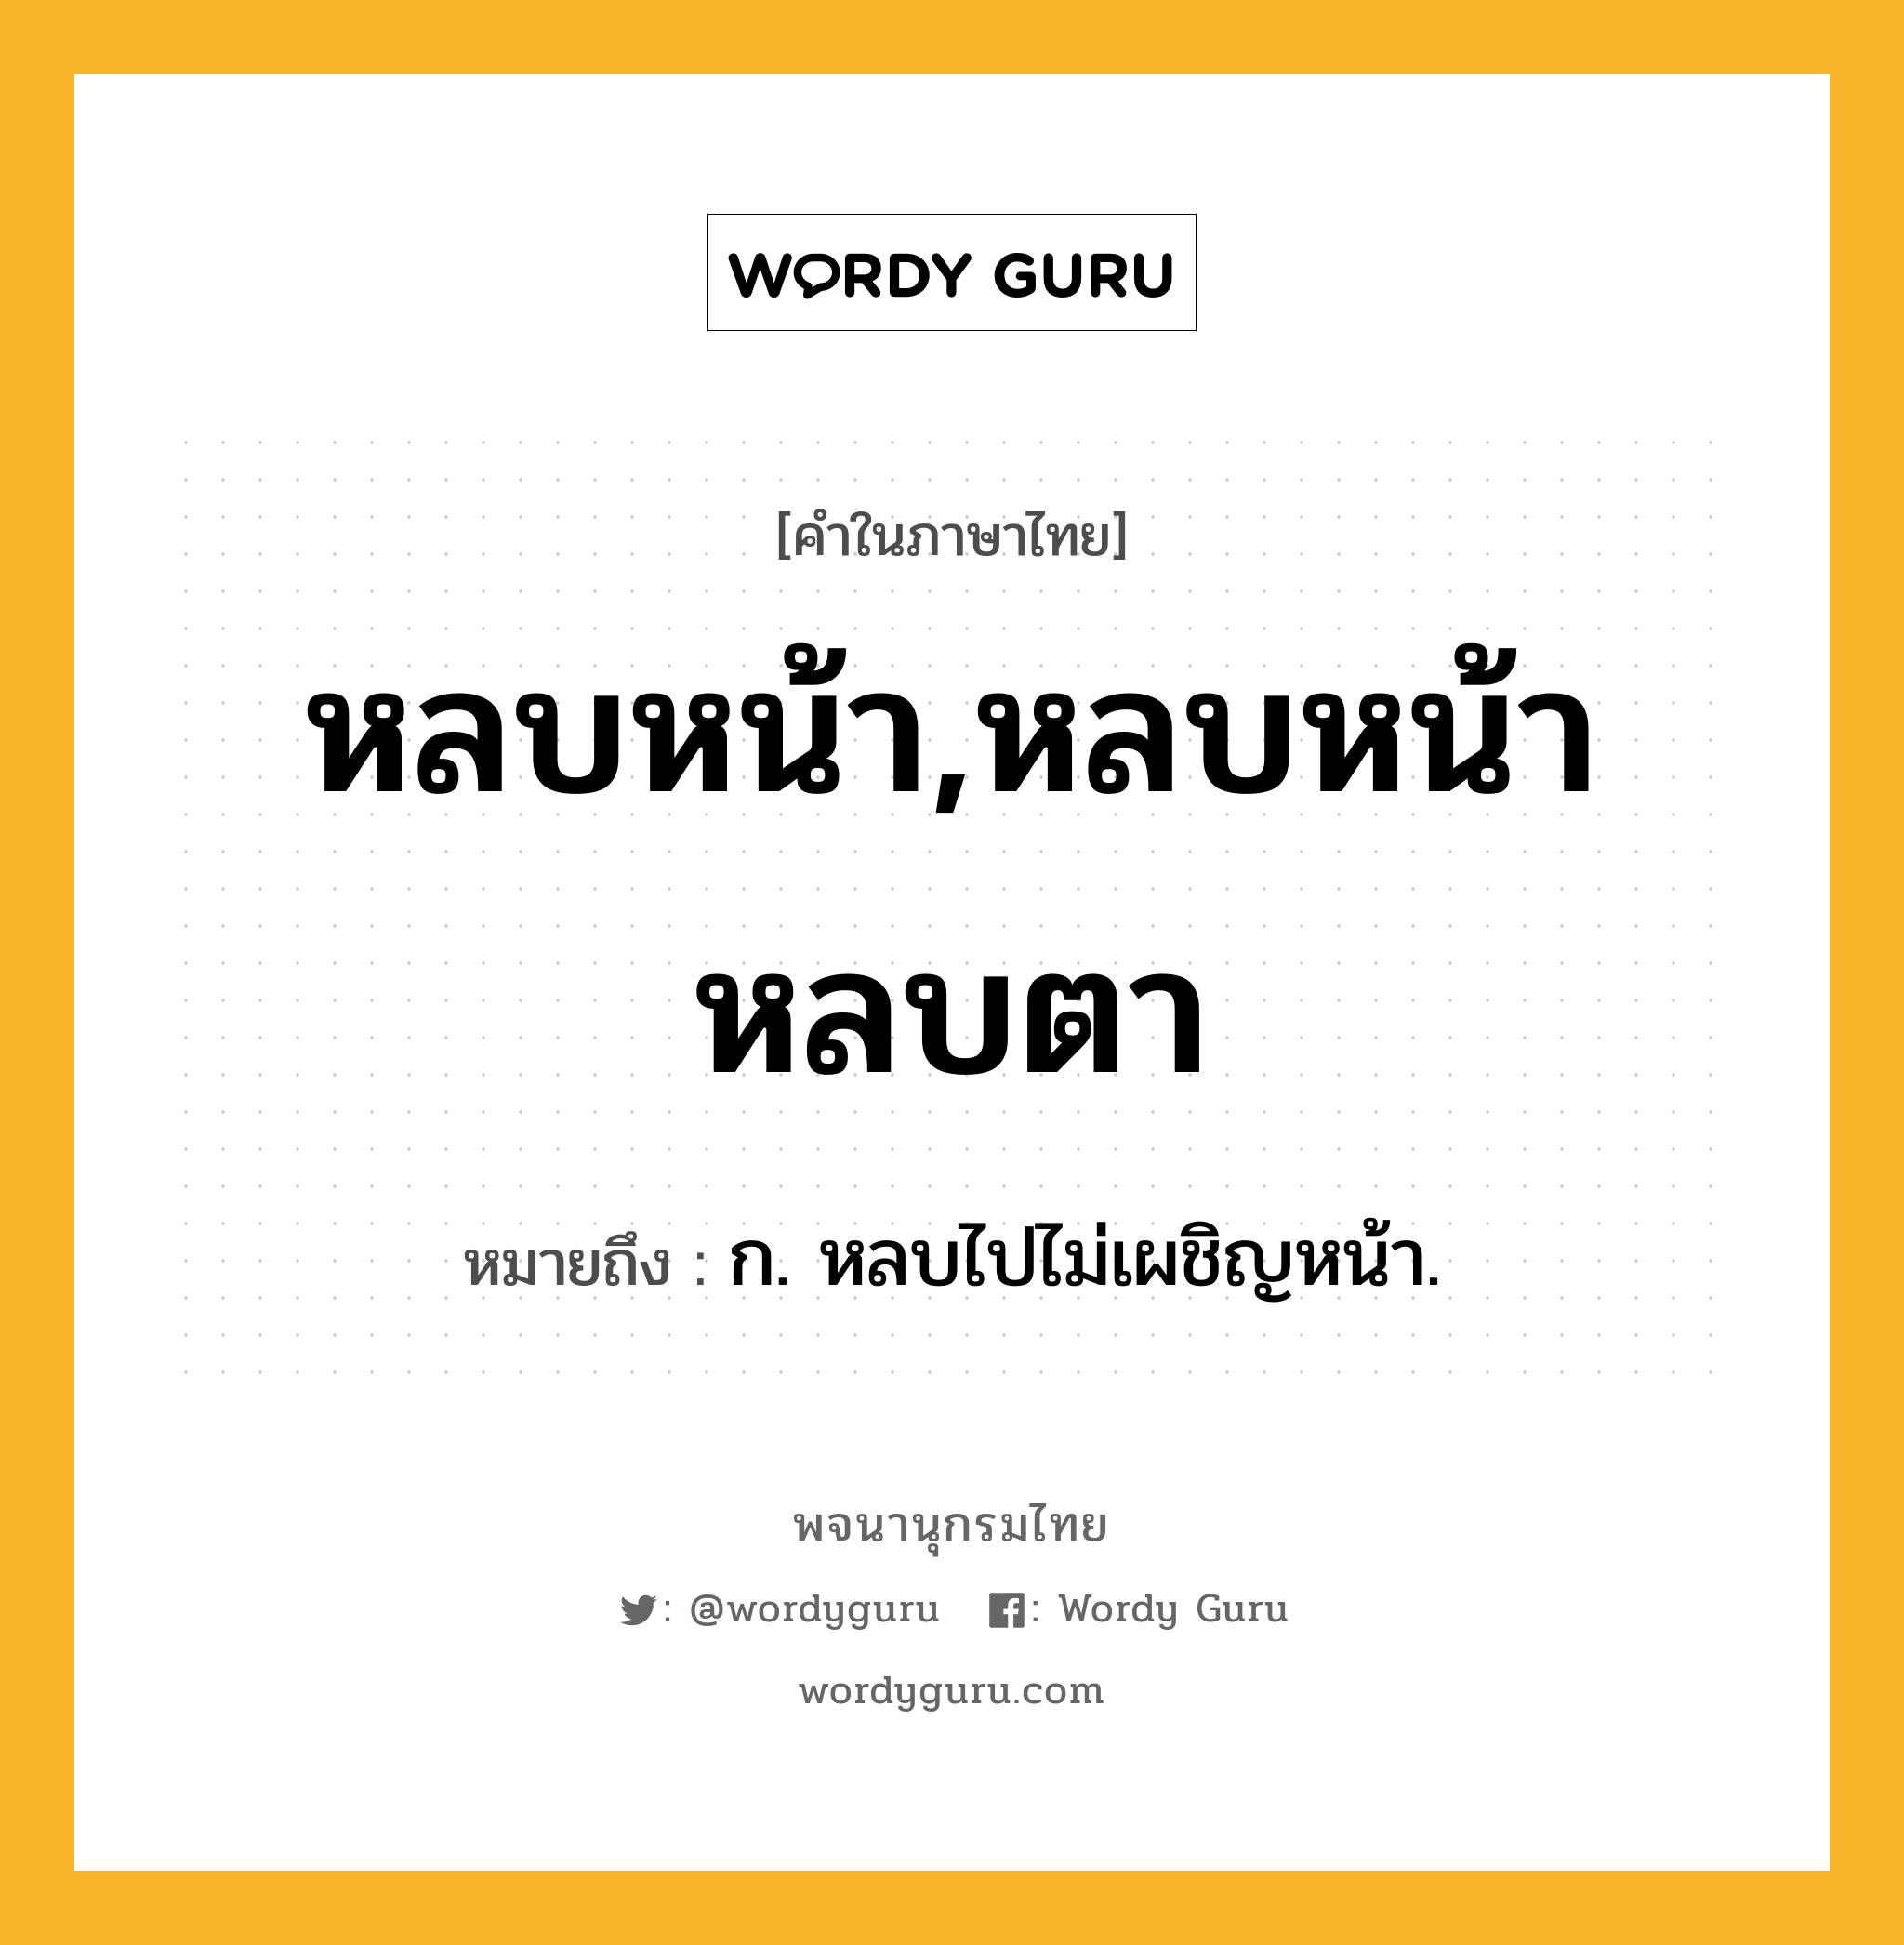 หลบหน้า,หลบหน้าหลบตา ความหมาย หมายถึงอะไร?, คำในภาษาไทย หลบหน้า,หลบหน้าหลบตา หมายถึง ก. หลบไปไม่เผชิญหน้า.